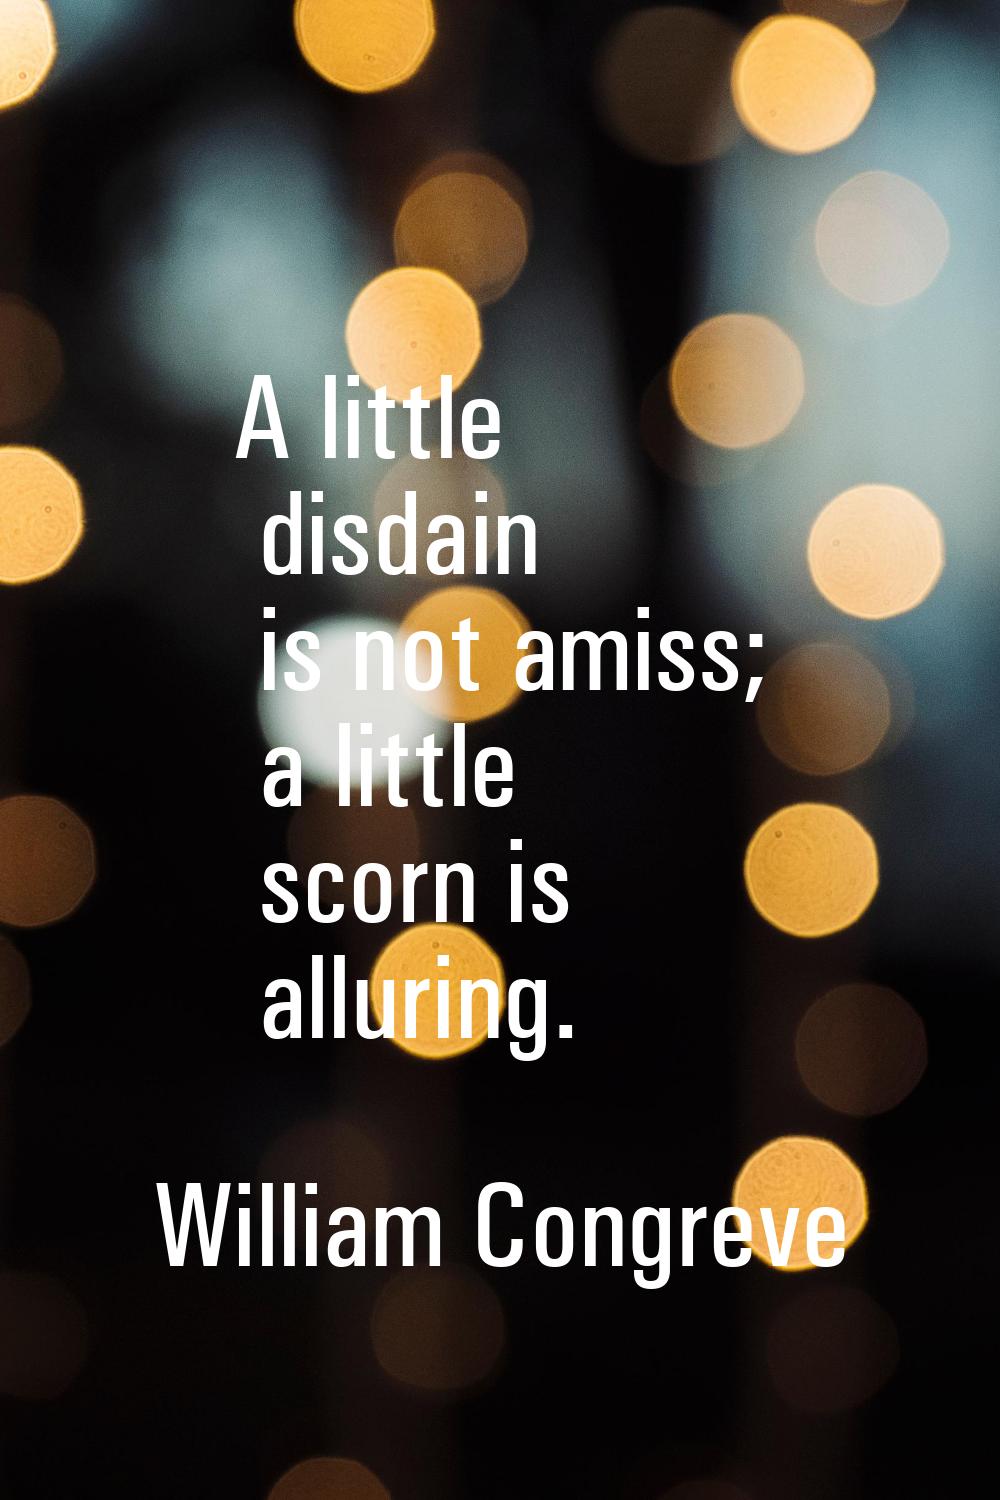 A little disdain is not amiss; a little scorn is alluring.